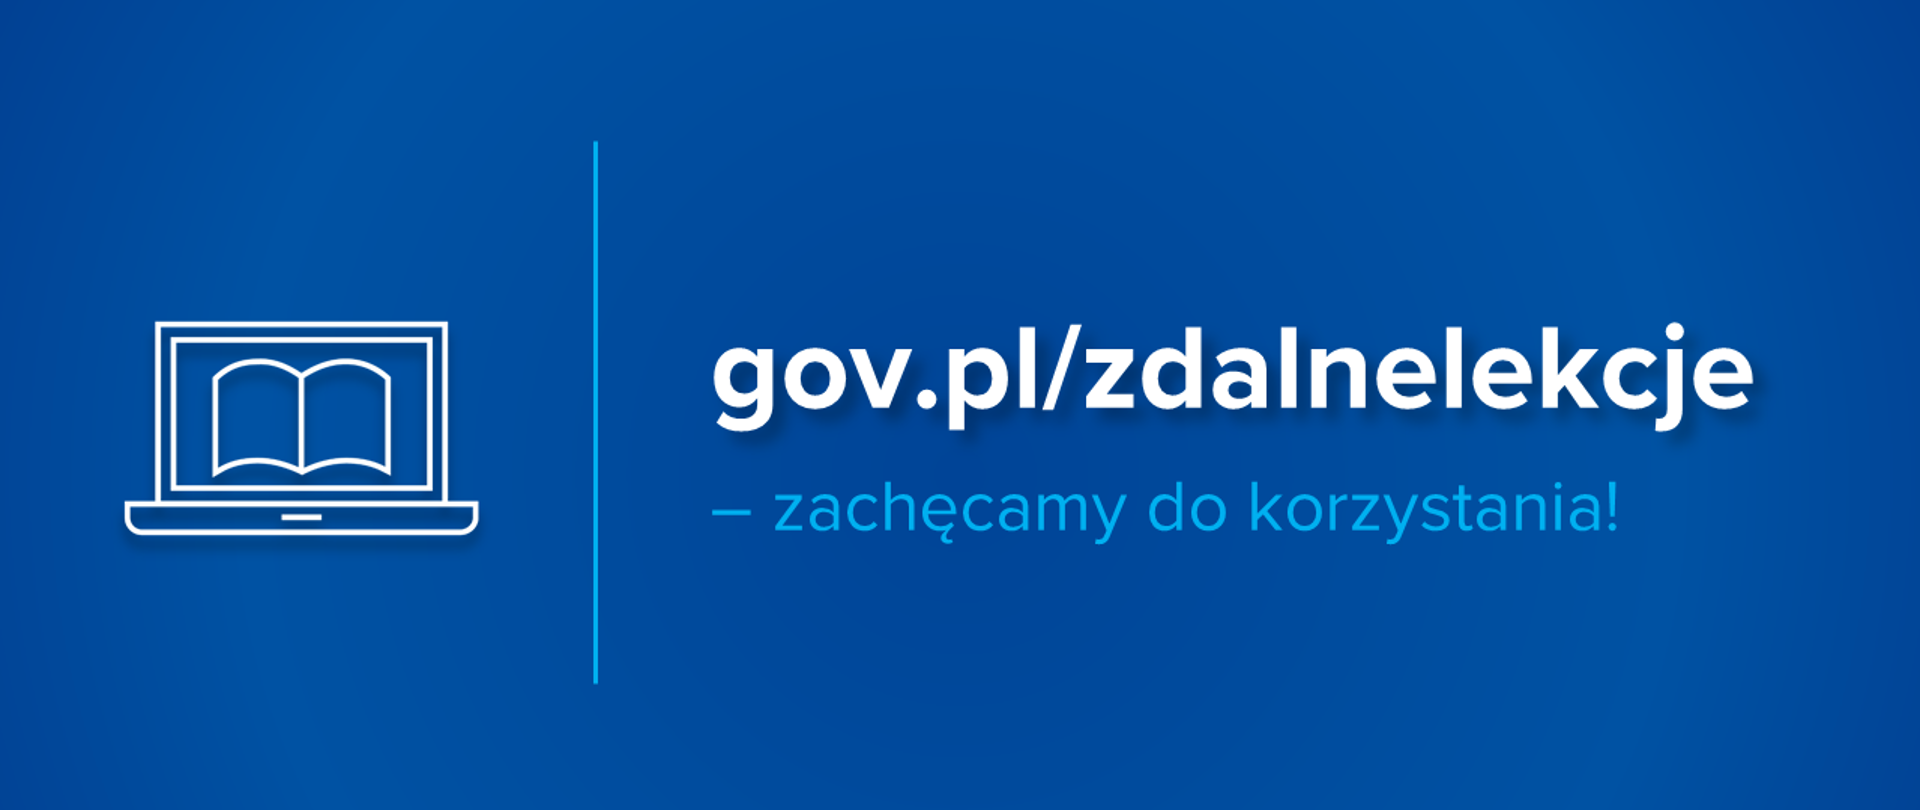 Niebieska grafika z ikoną laptopa i książki, a obok tekst " gov.pl/zdalnelekcje – zachęcamy do korzystania